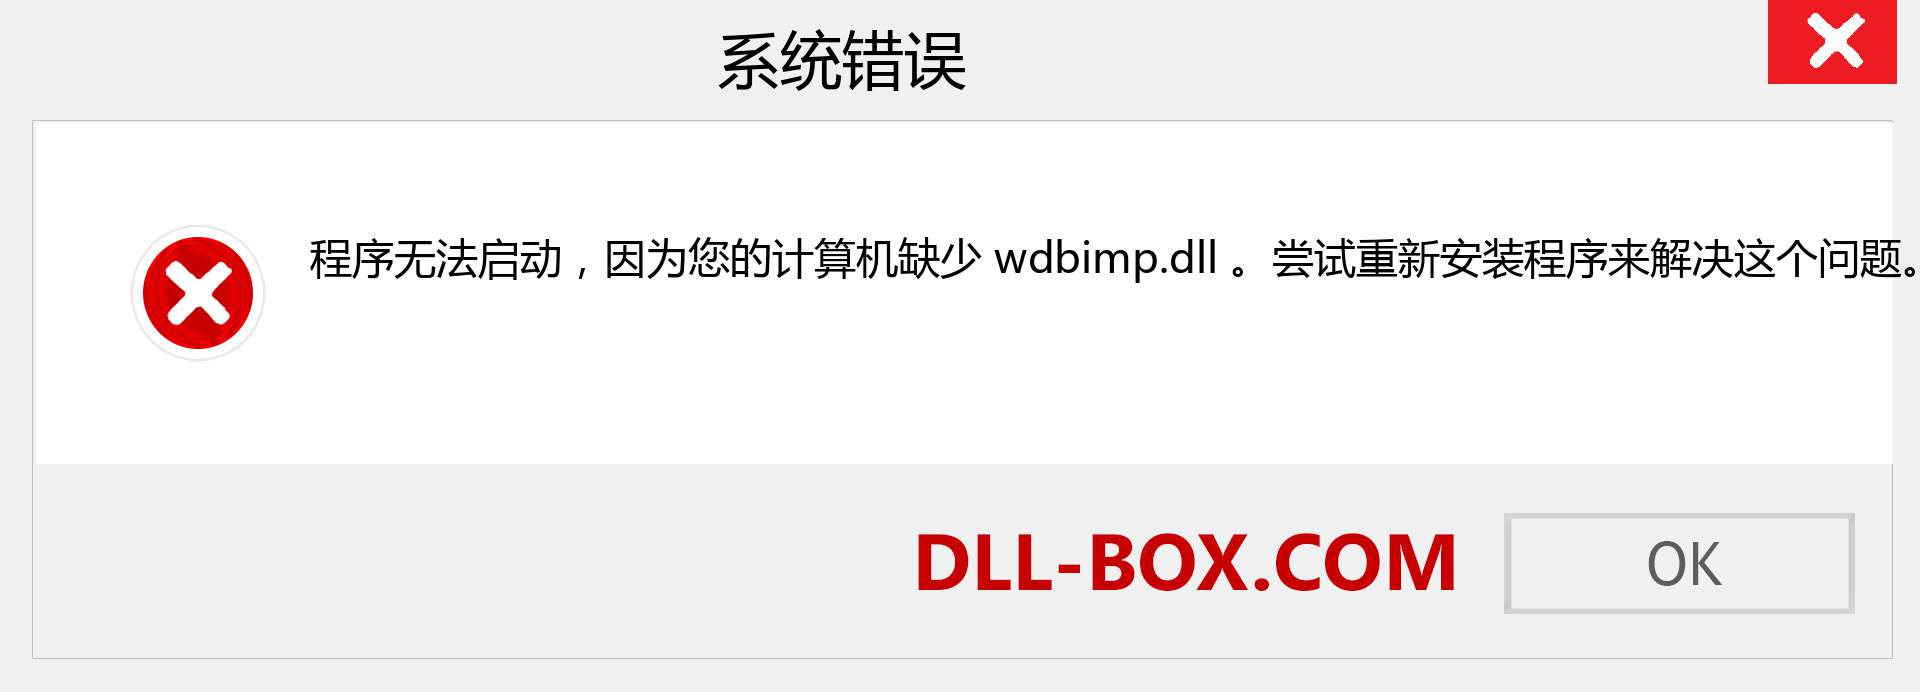 wdbimp.dll 文件丢失？。 适用于 Windows 7、8、10 的下载 - 修复 Windows、照片、图像上的 wdbimp dll 丢失错误